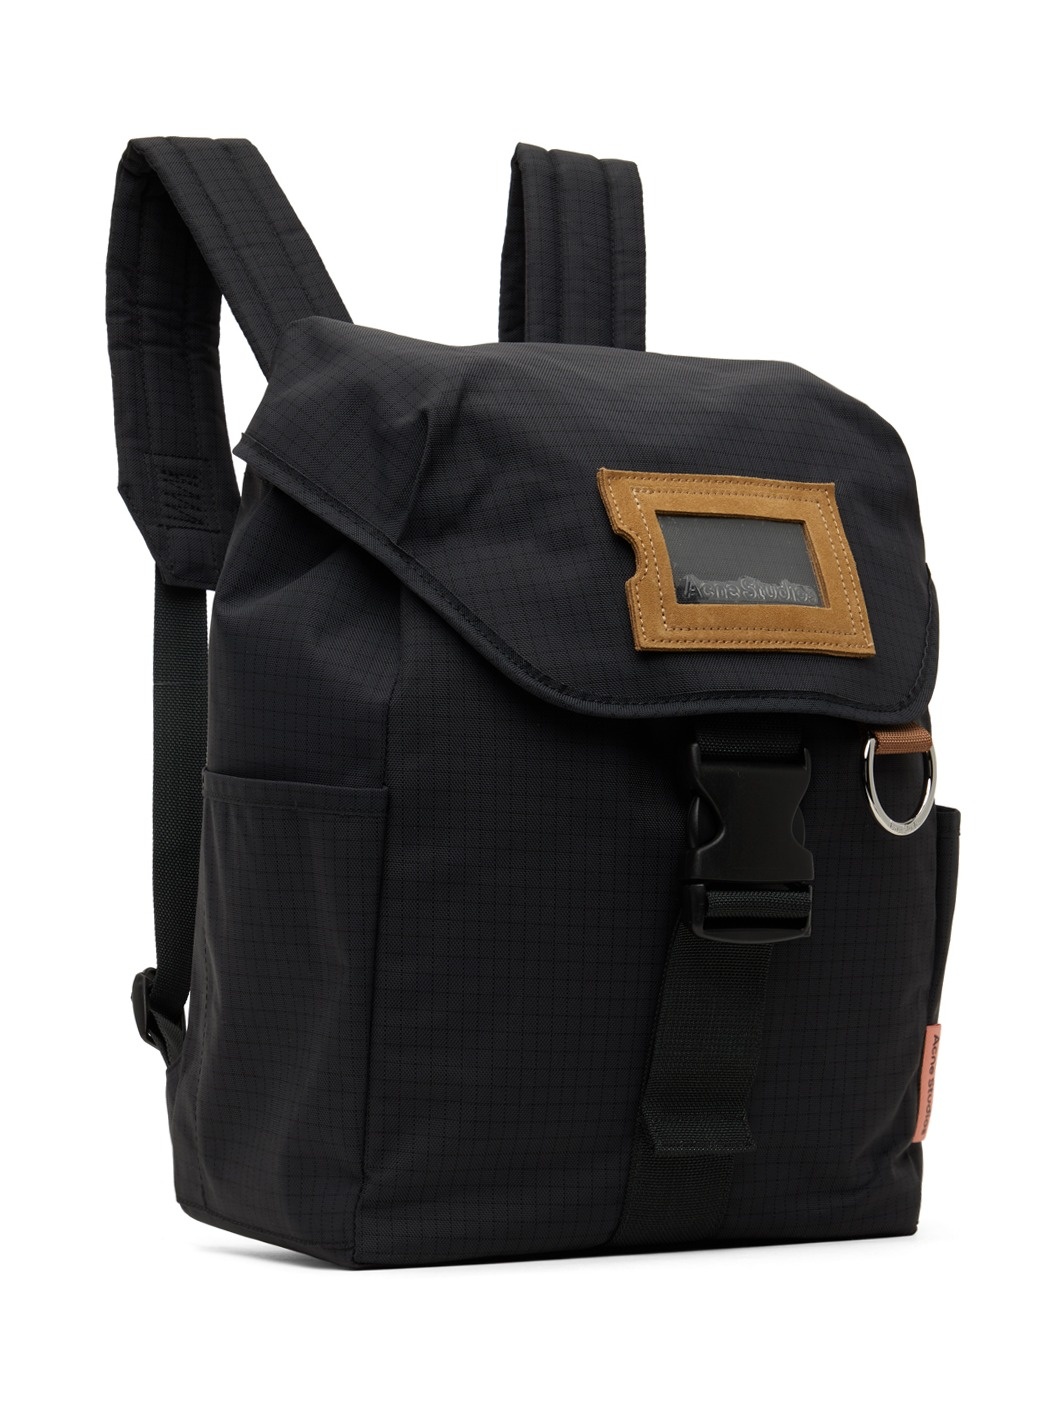 Black Ripstop Nylon Backpack - 2